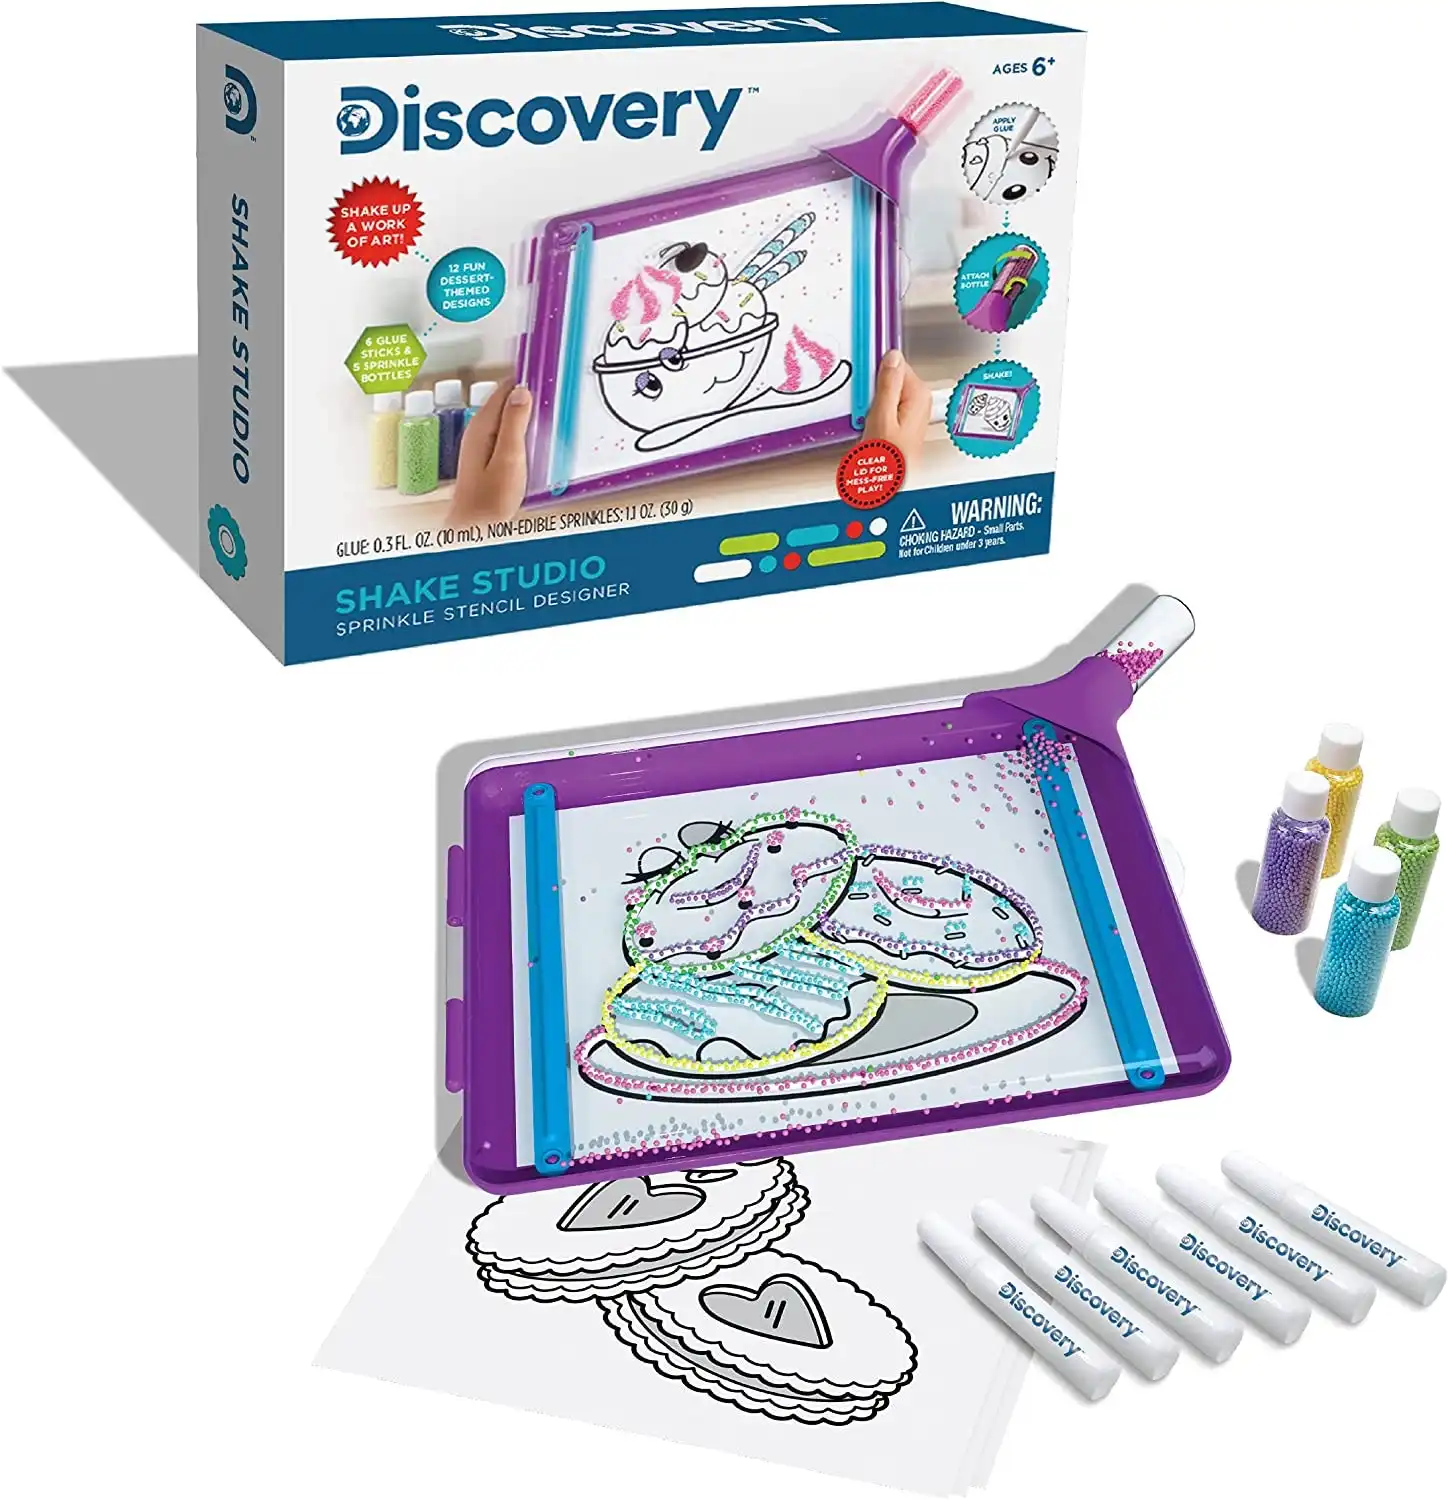 Discovery Kids Shake Studio Sprinkle Designer Kit